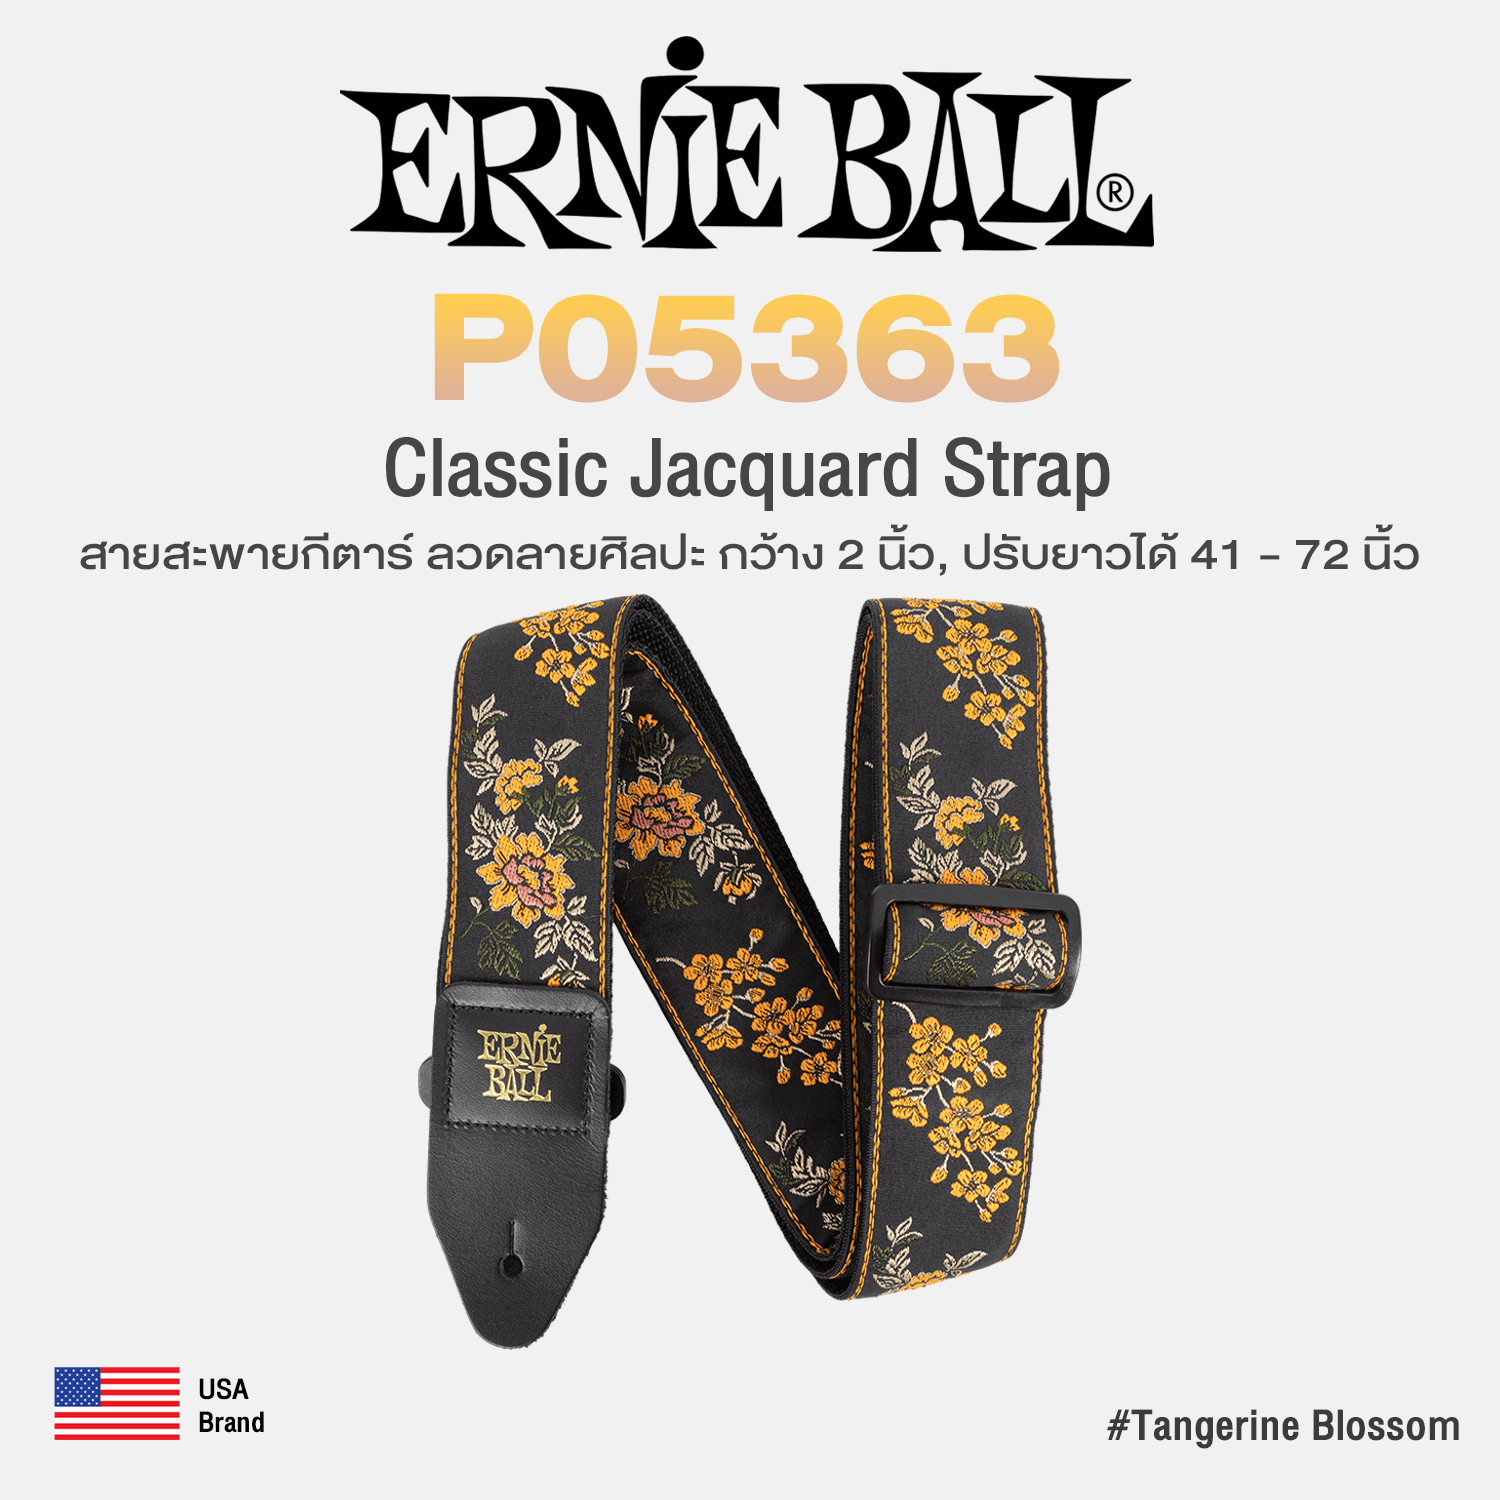 Ernie Ball Classic Jacquard Tangerine Blossom